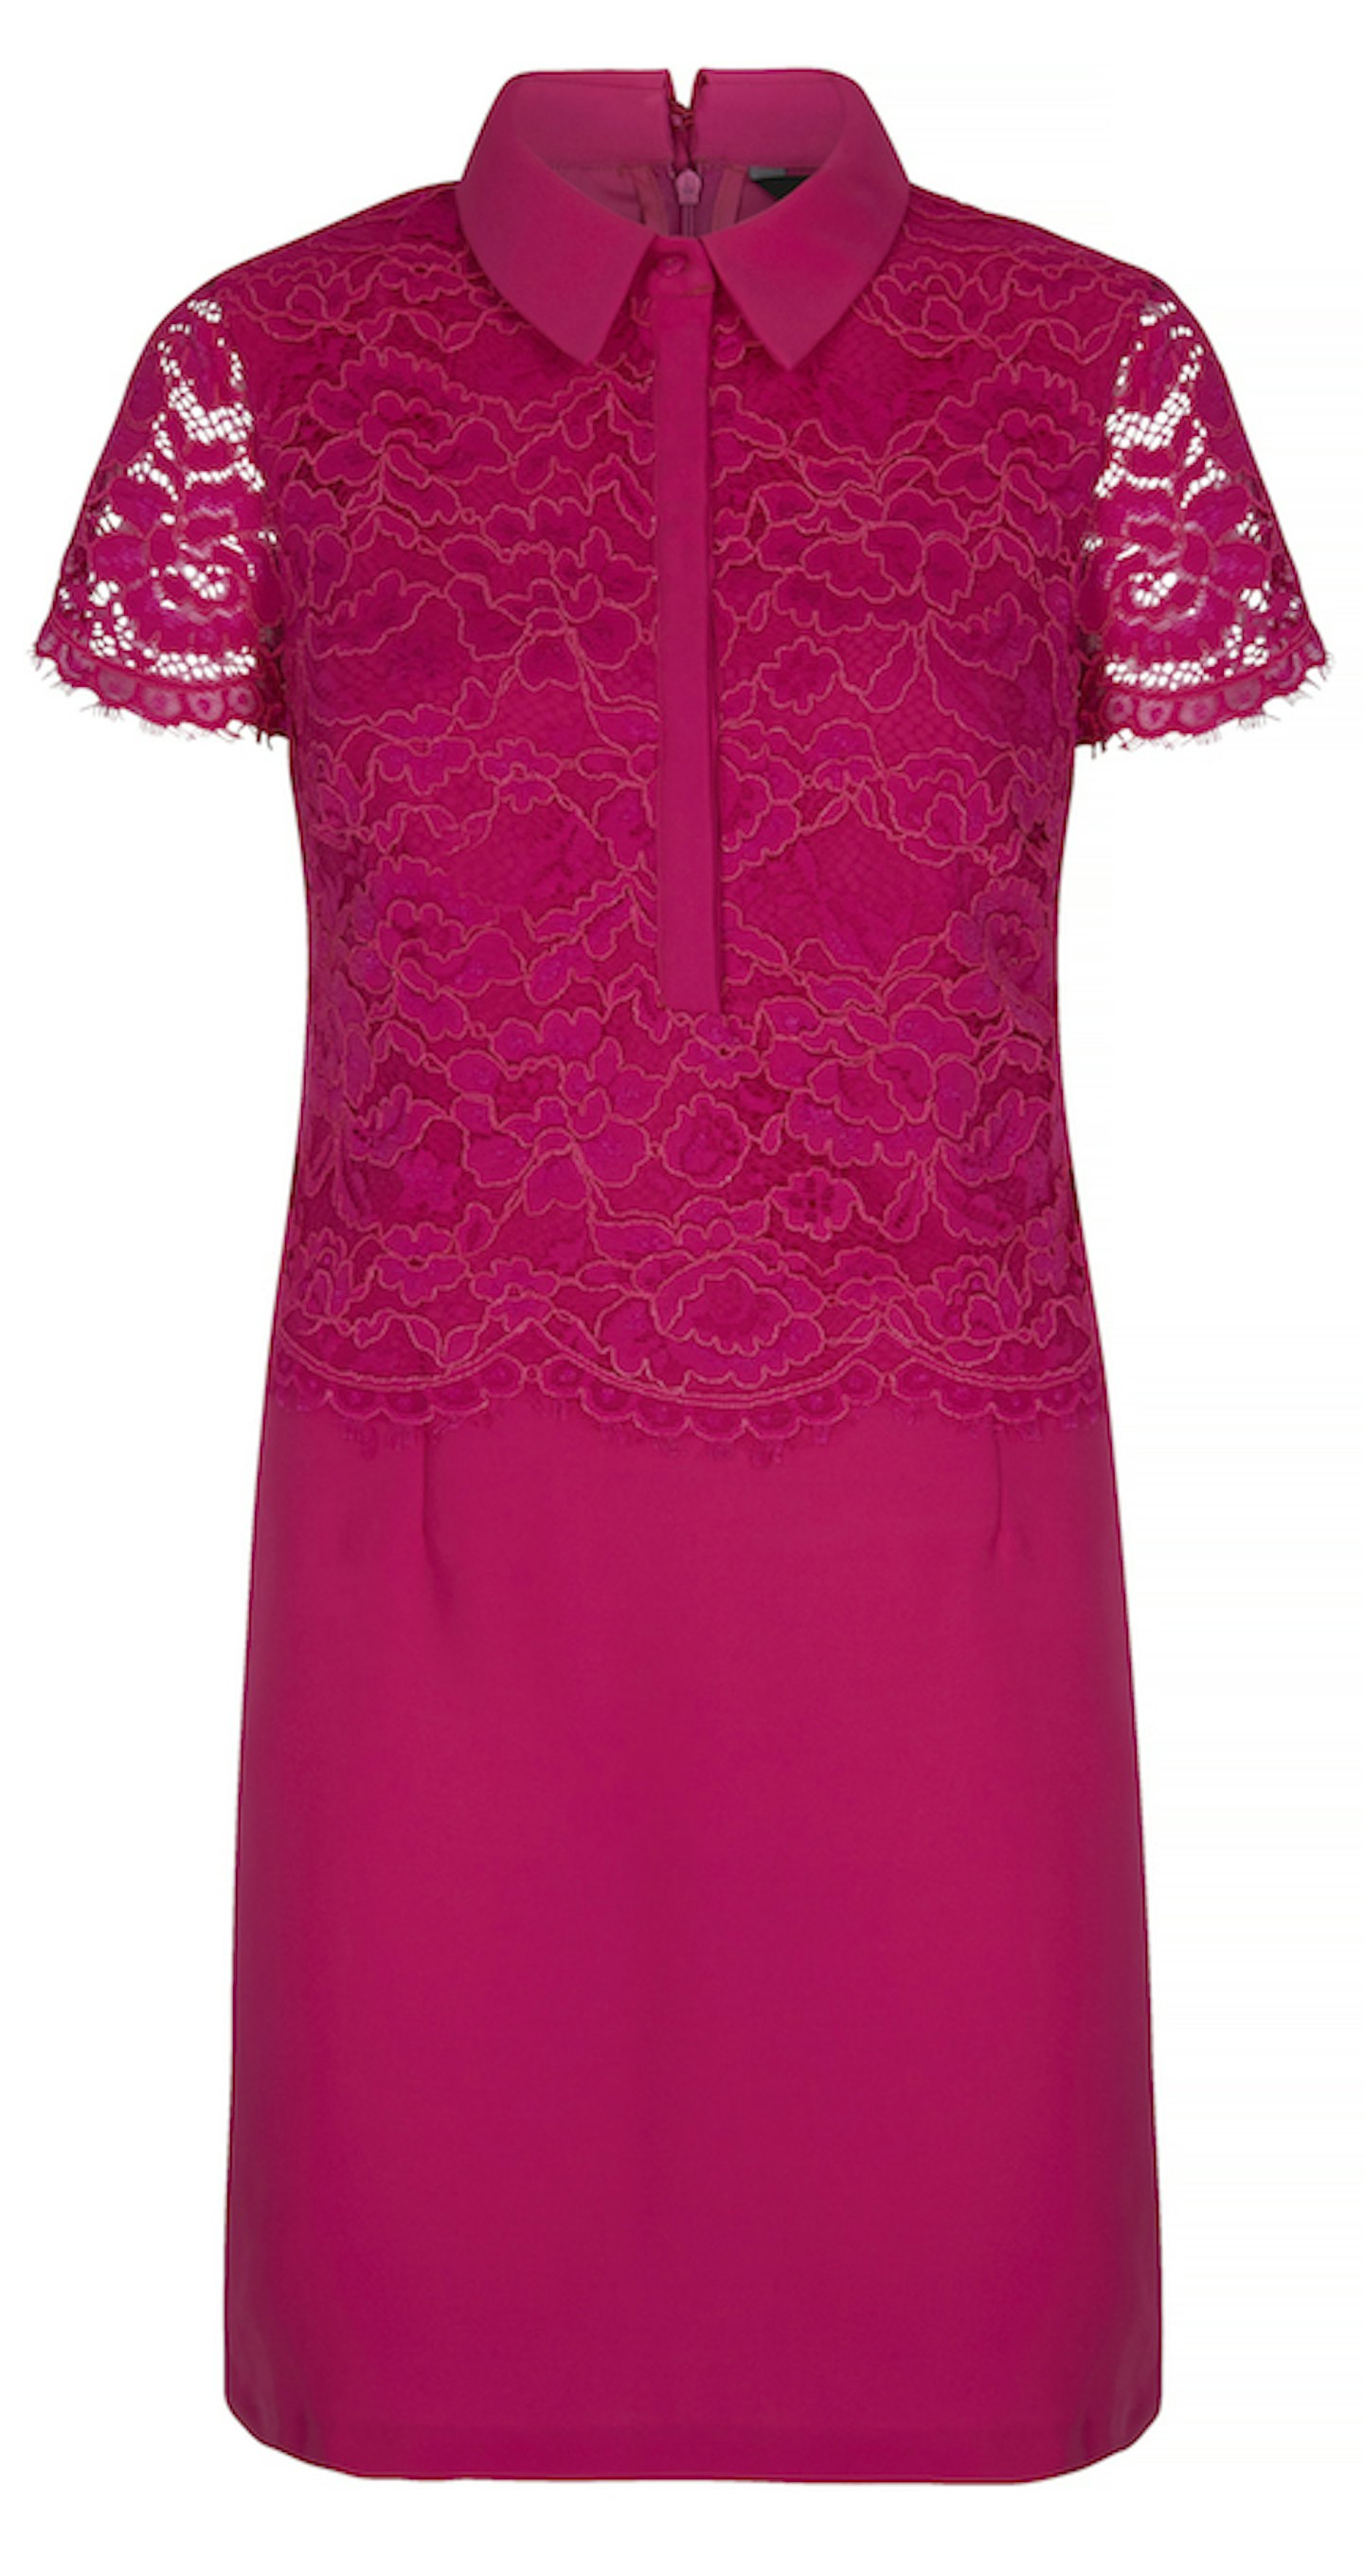 Fuchsia lace dress £50